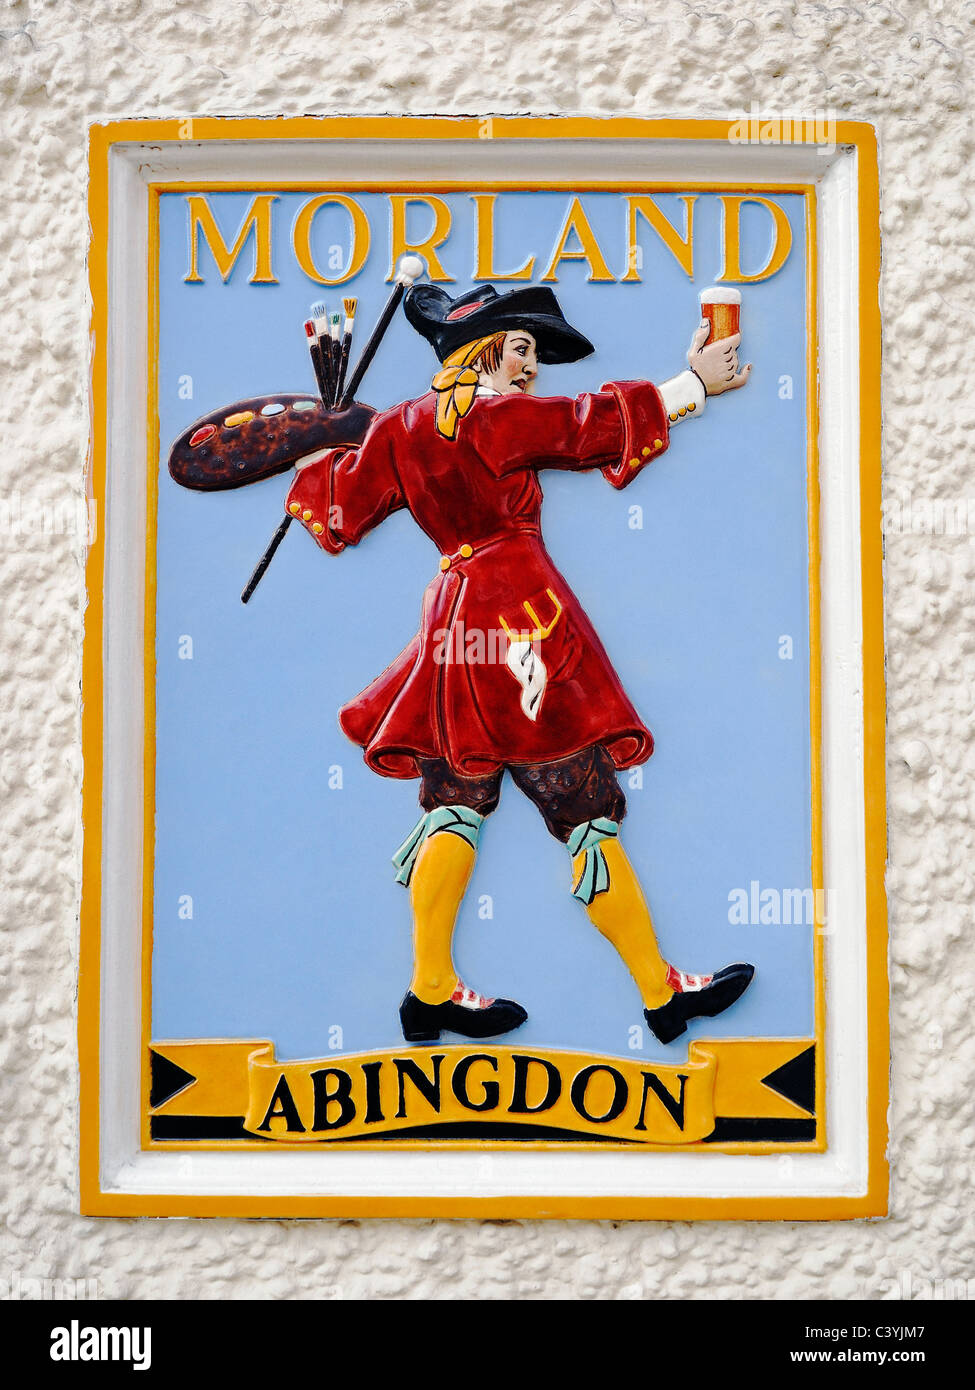 Morland Brauerei Zeichen setzen in die Wand ein Pub, Wantage, England, UK. Stockfoto